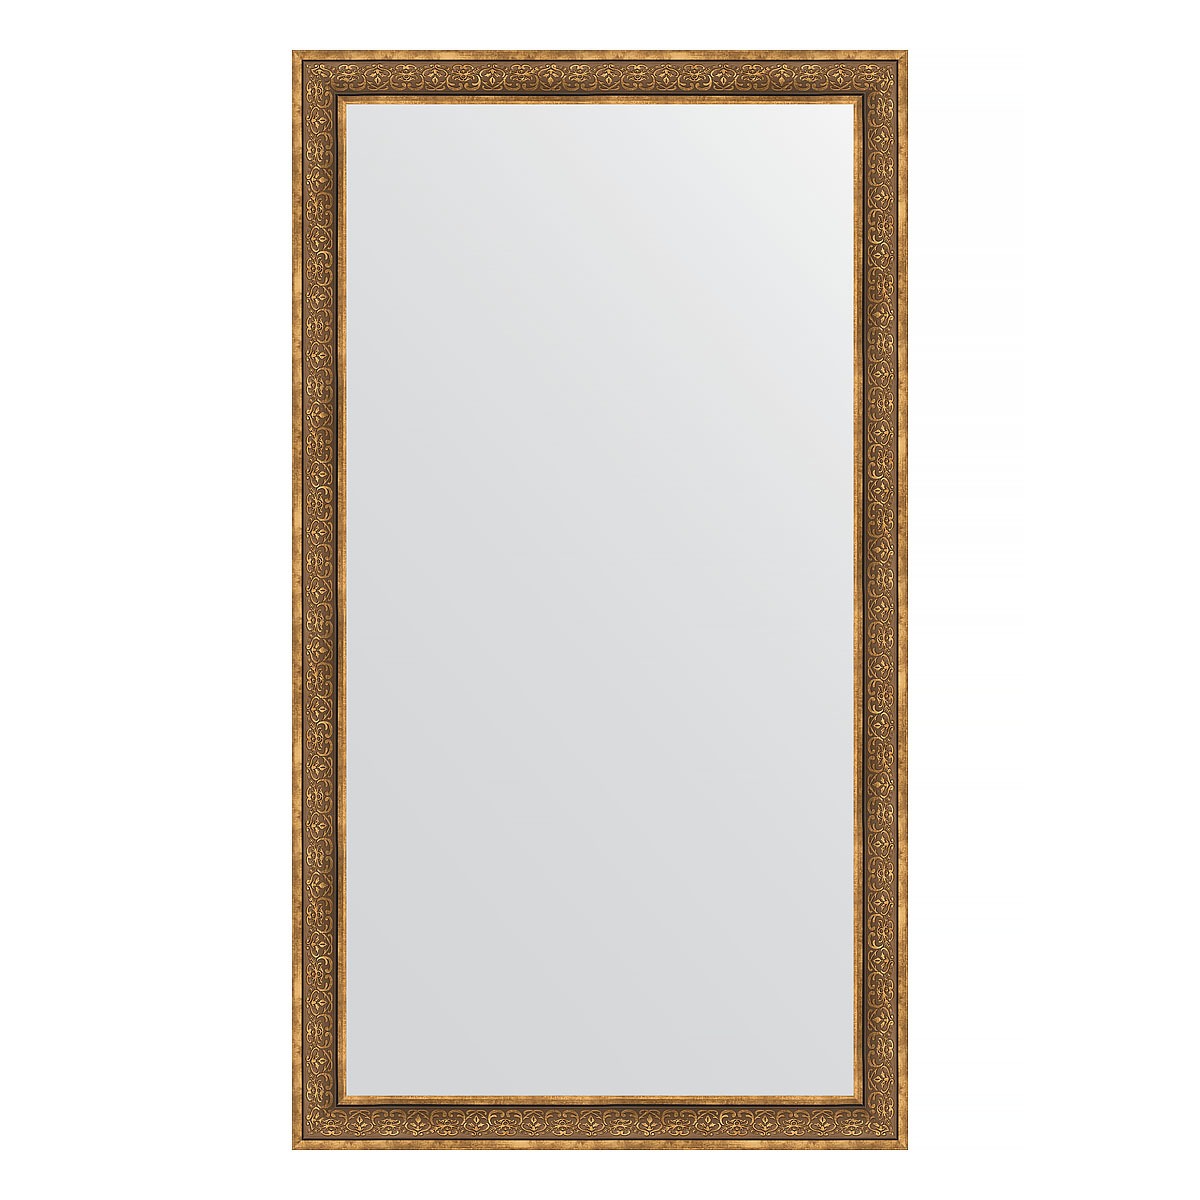 Зеркало напольное в багетной раме Evoform вензель бронзовый 101 мм 114x204 см зеркало напольное в багетной раме evoform вензель бронзовый 101 мм 114x204 см